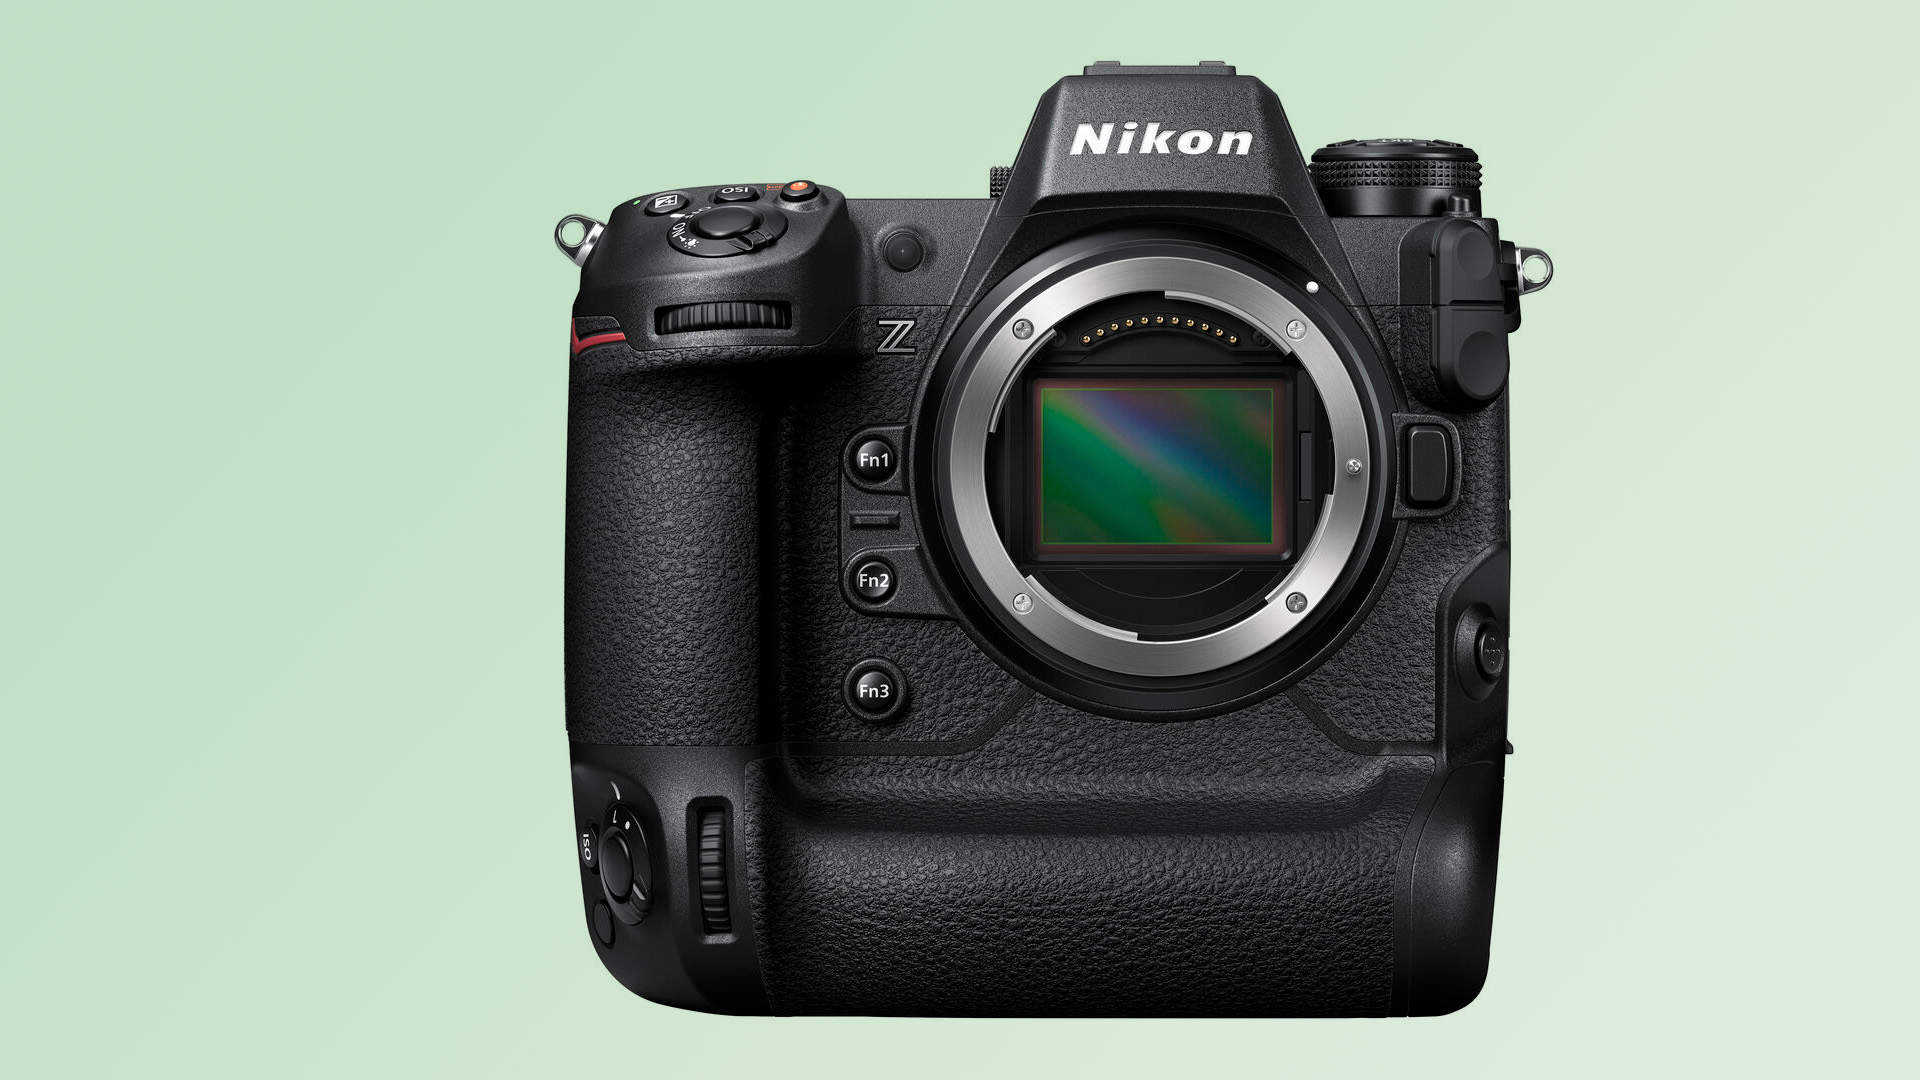  Снимок продукта камеры Nikon Z9 прямо спереди с обнаженной полнокадровой матрицей